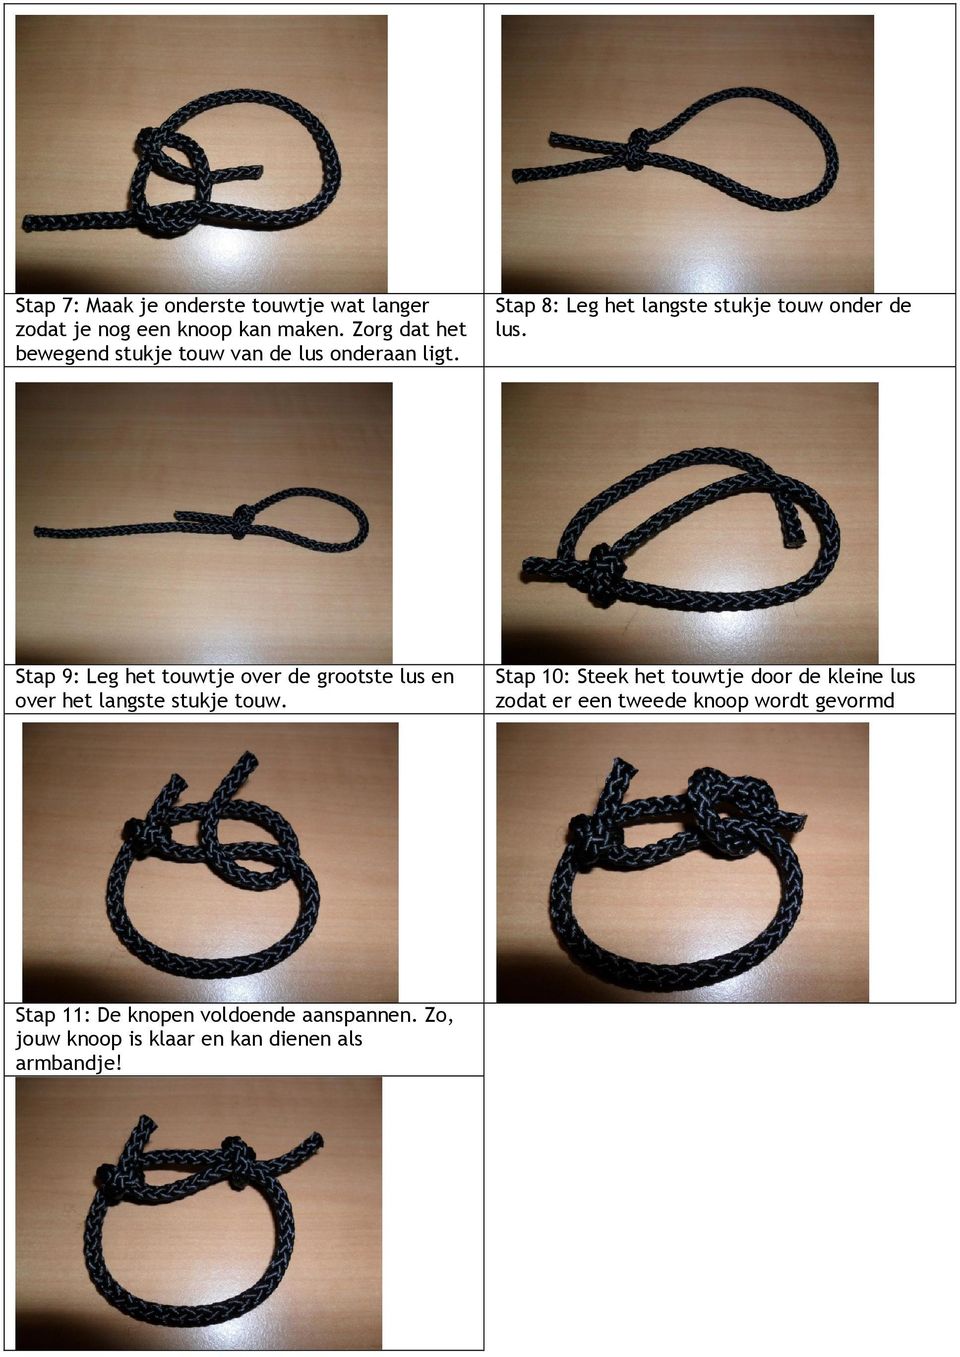 Stap 9: Leg het touwtje over de grootste lus en over het langste stukje touw.